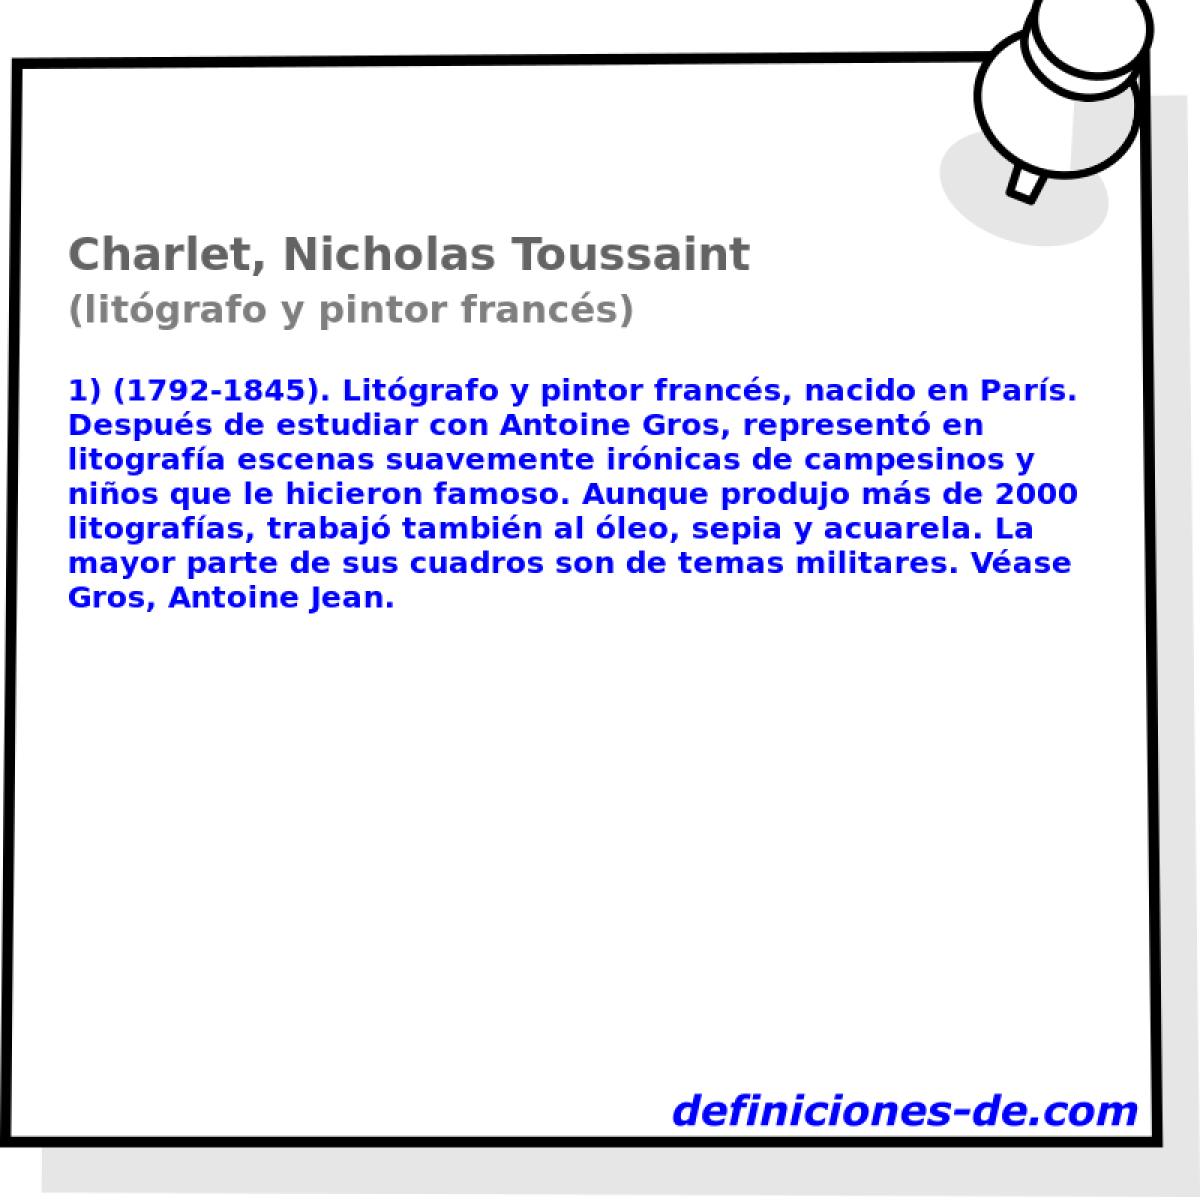 Charlet, Nicholas Toussaint (litgrafo y pintor francs)